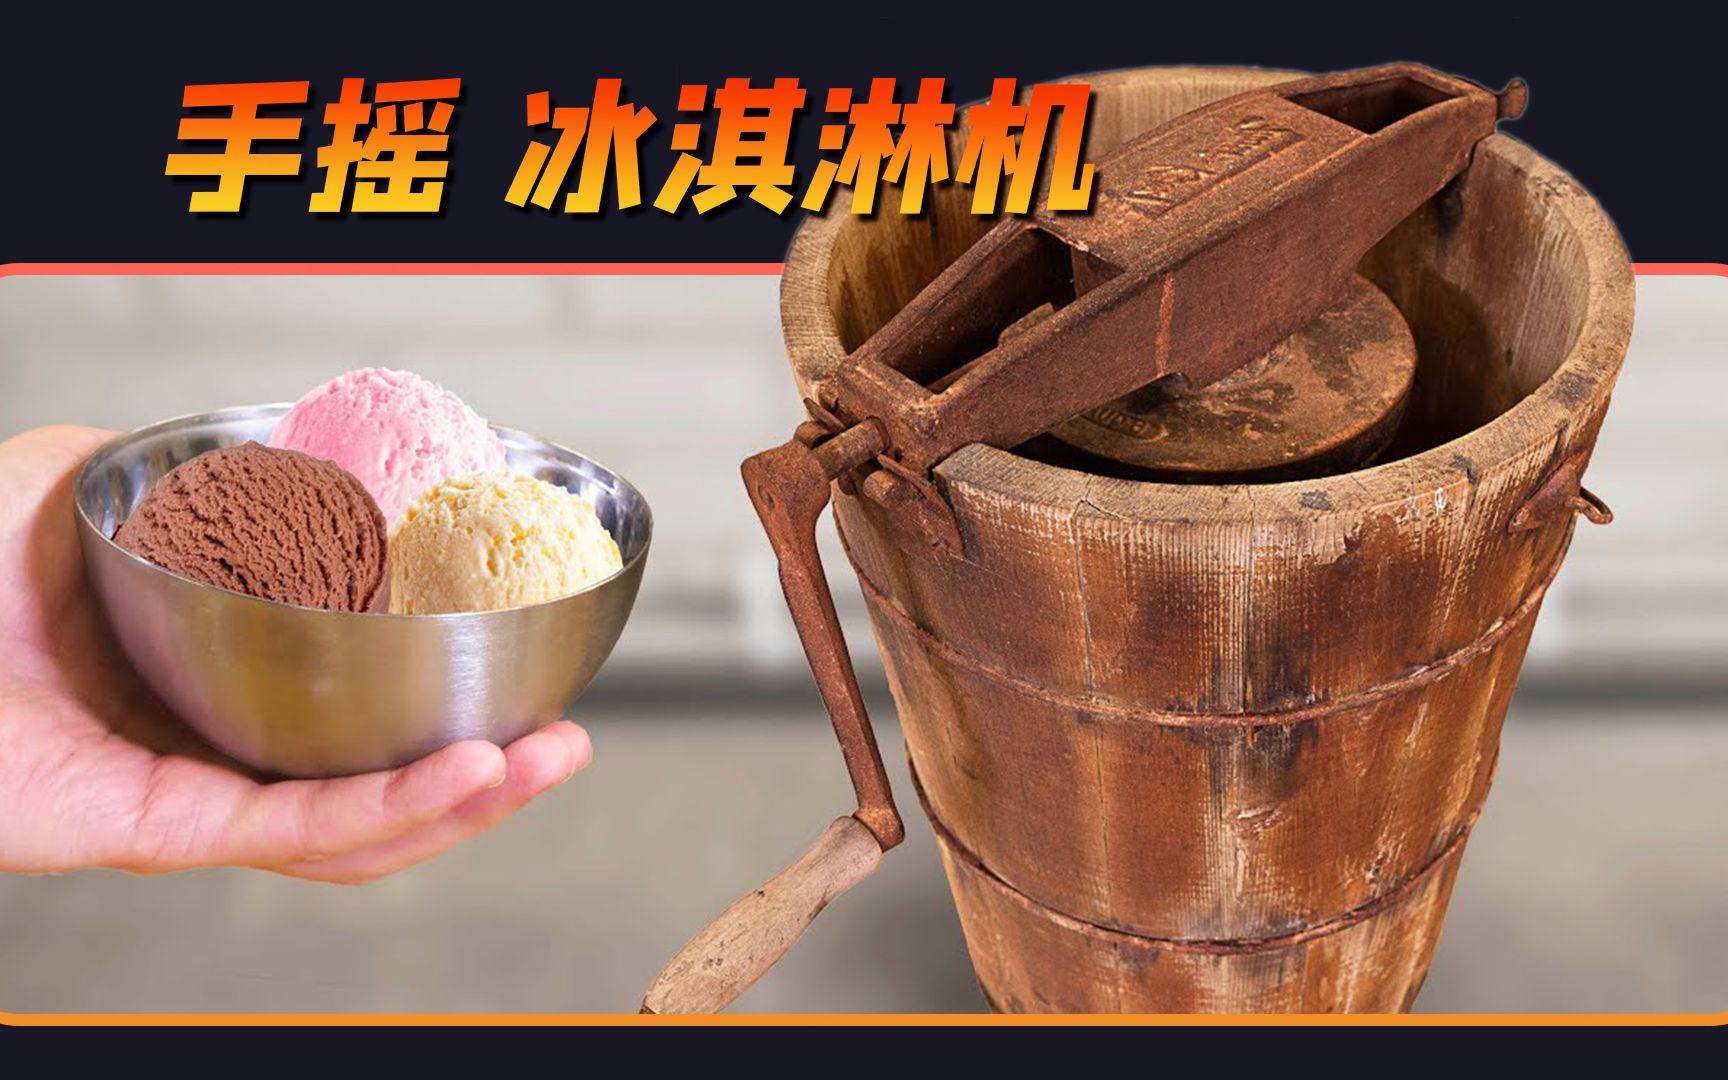 台式三色软冰淇淋机 冰激凌机 商用冰激凌雪糕机 - 机械设备批发网